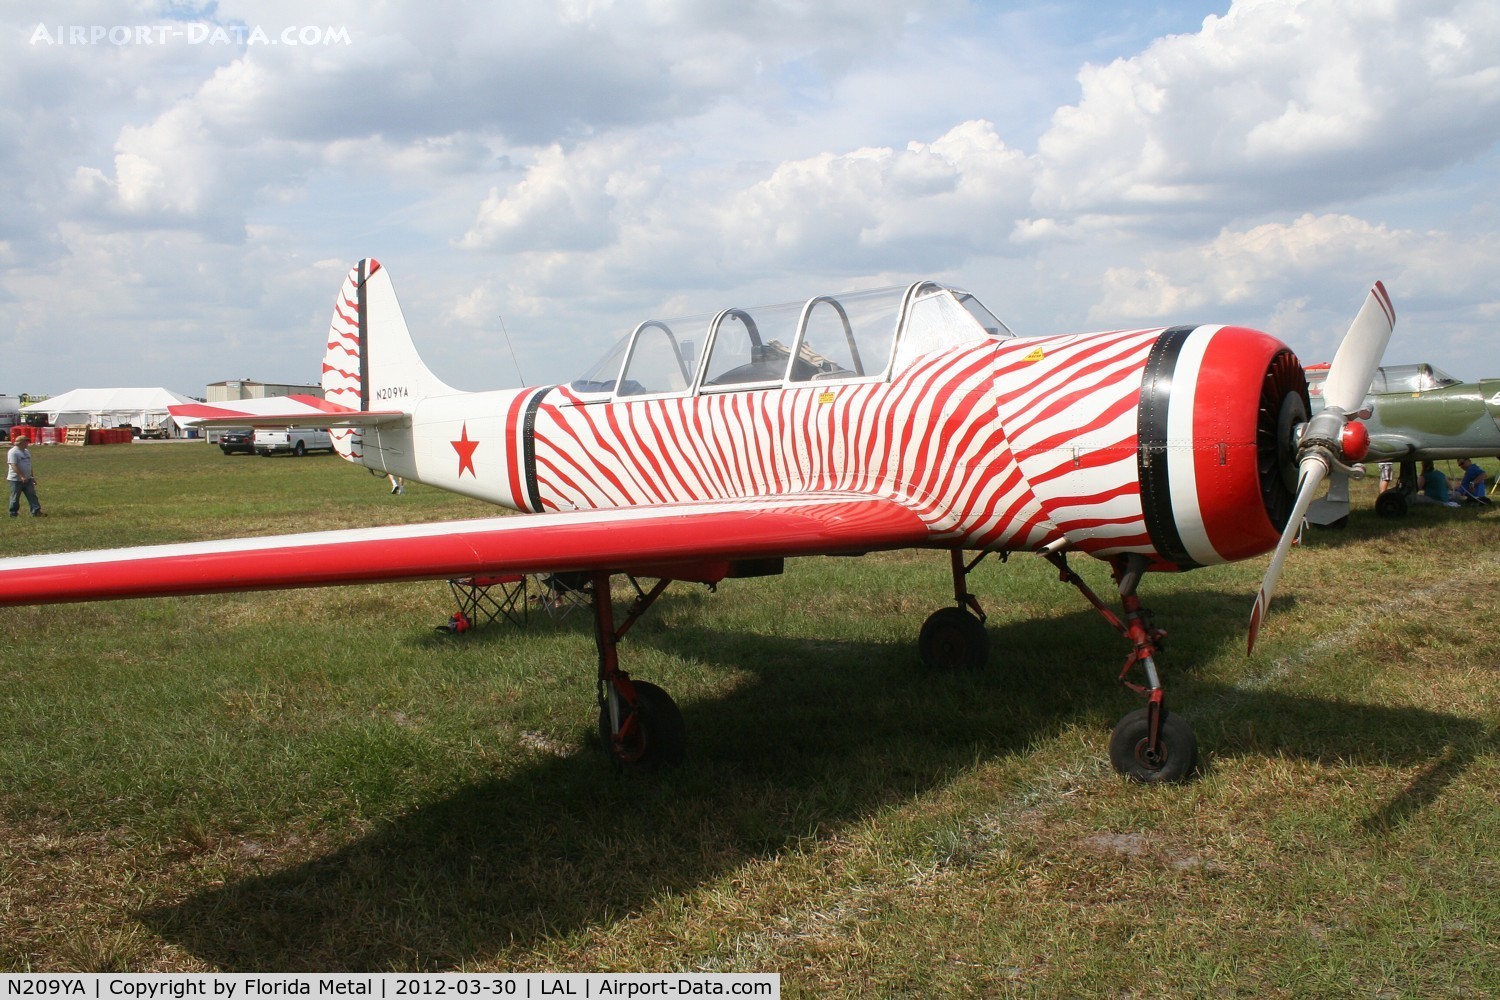 N209YA, 1987 Yakovlev Yak-52 C/N 878009, Yak 52